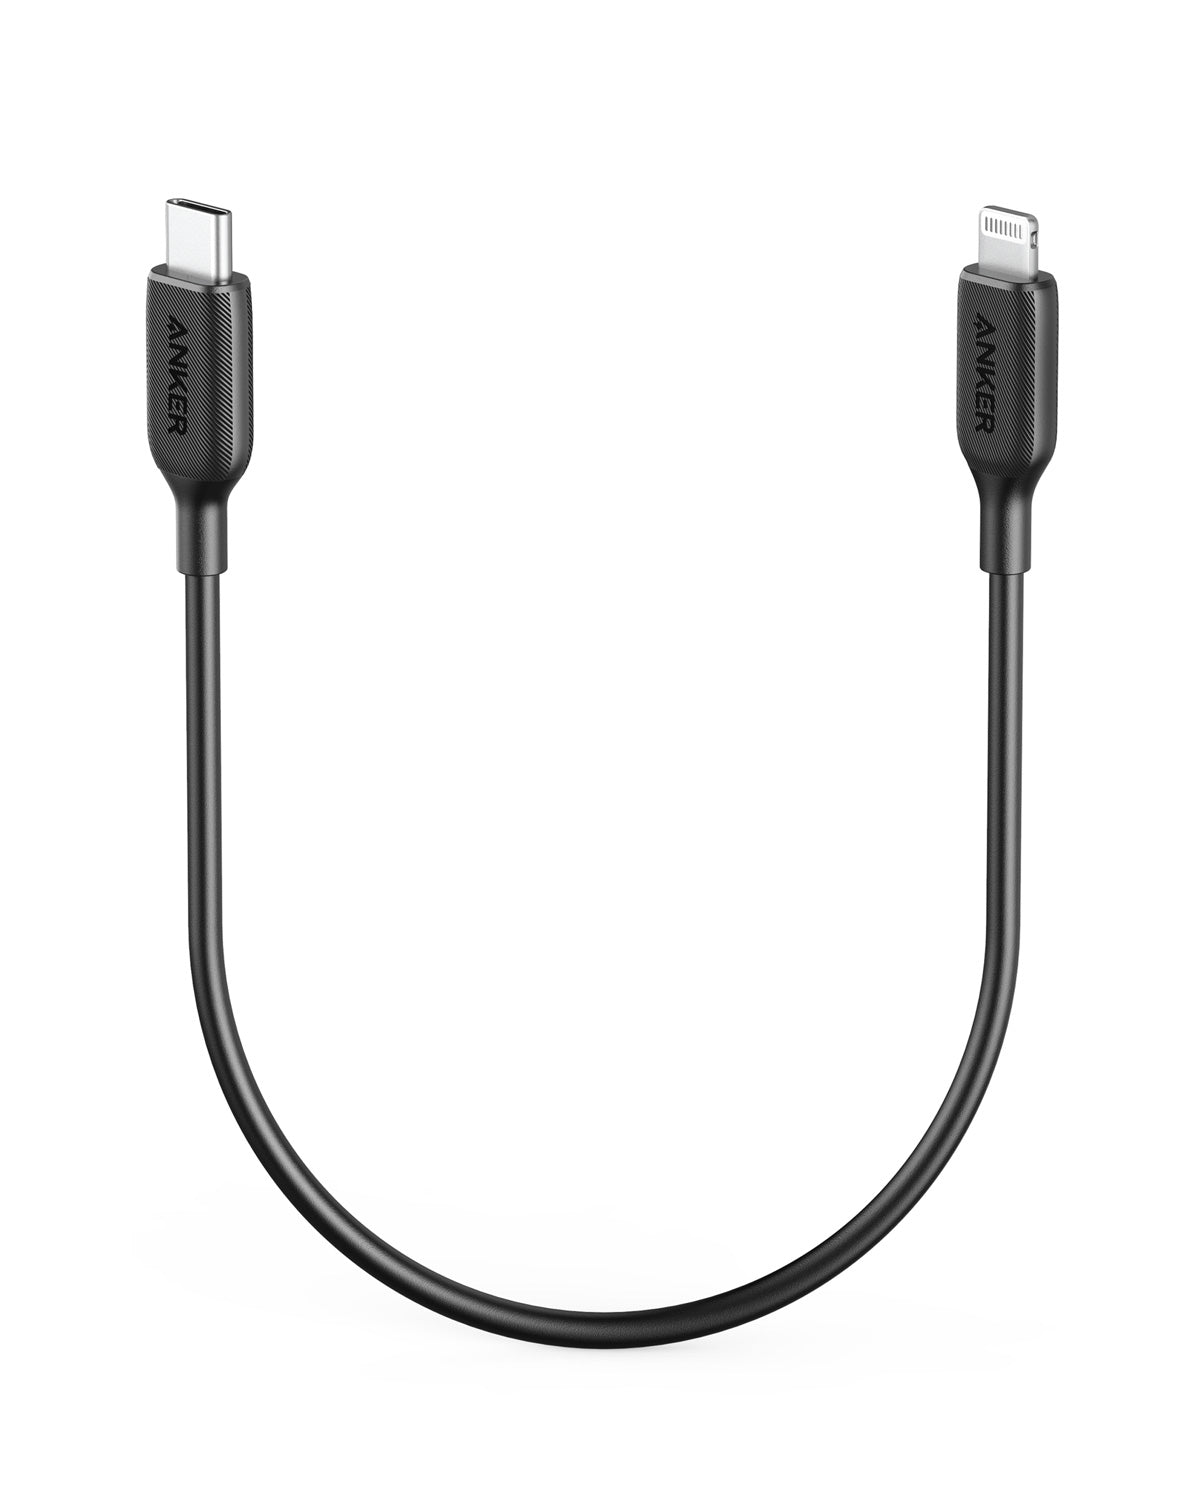 Anker <b>541</b> USB-C to Lightning Cable (1 ft / 3 ft / 6 ft)